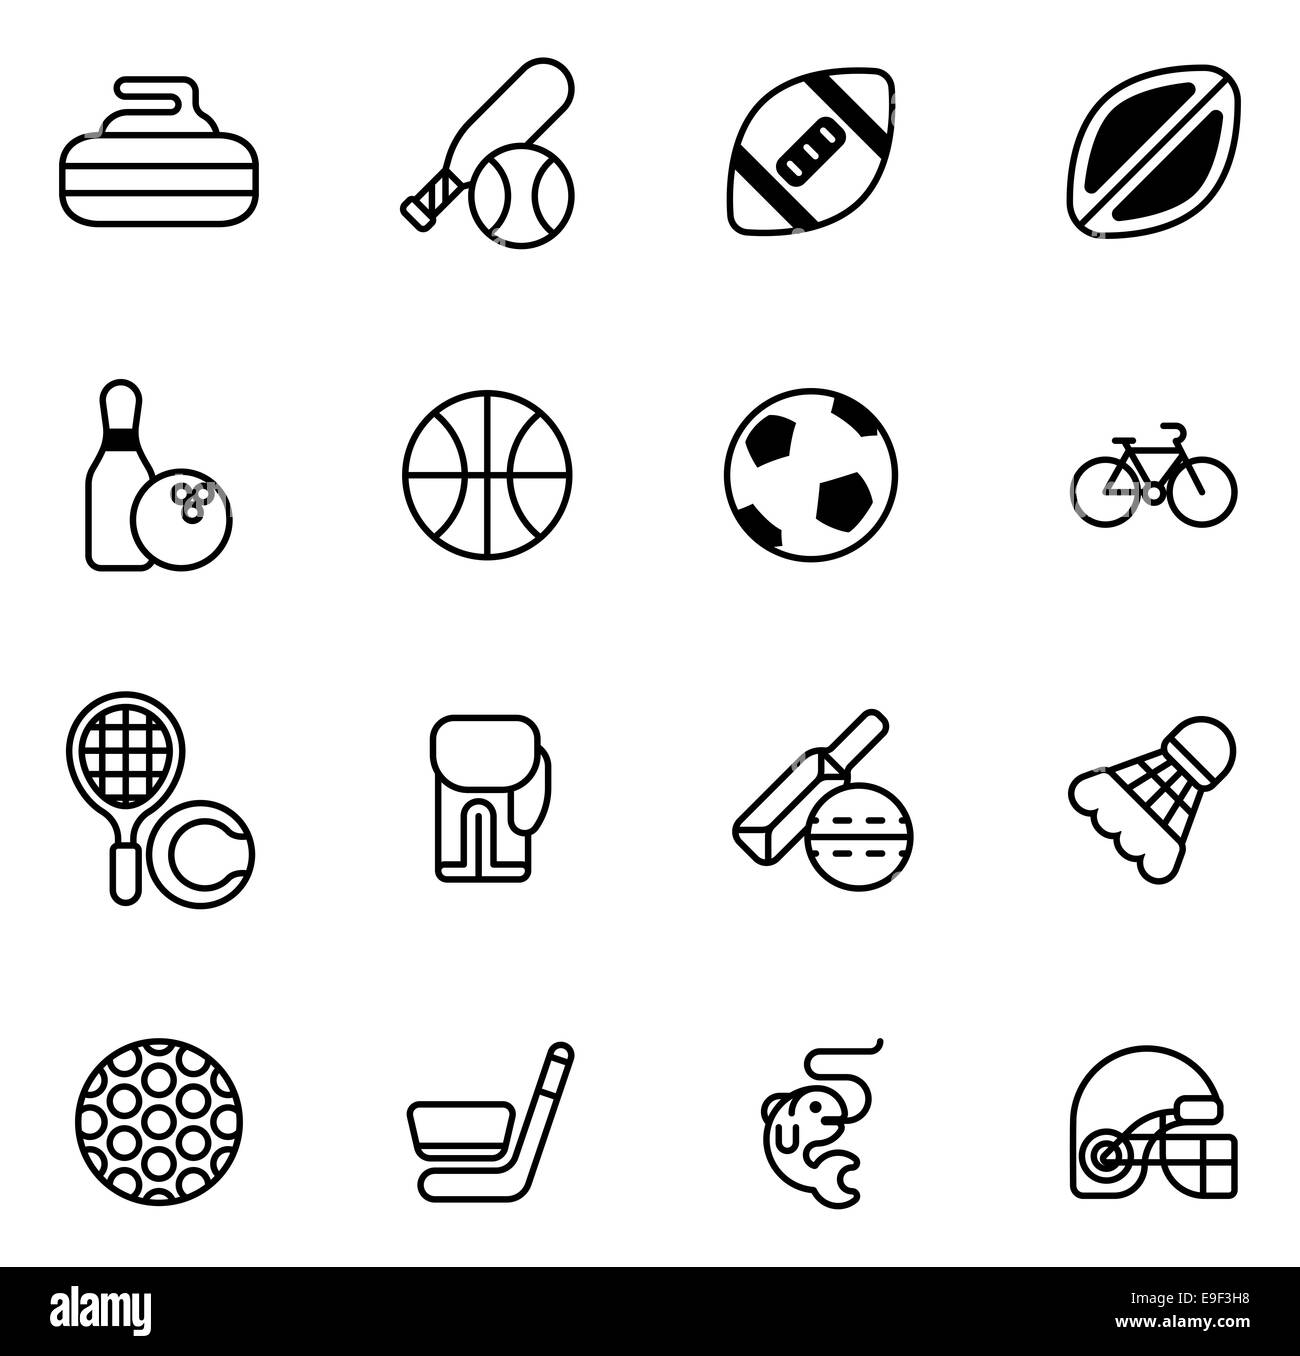 Sport-Icons set mit Icons für viele Sportarten wie Fußball, Cricket, Curling und vieles mehr Stockfoto